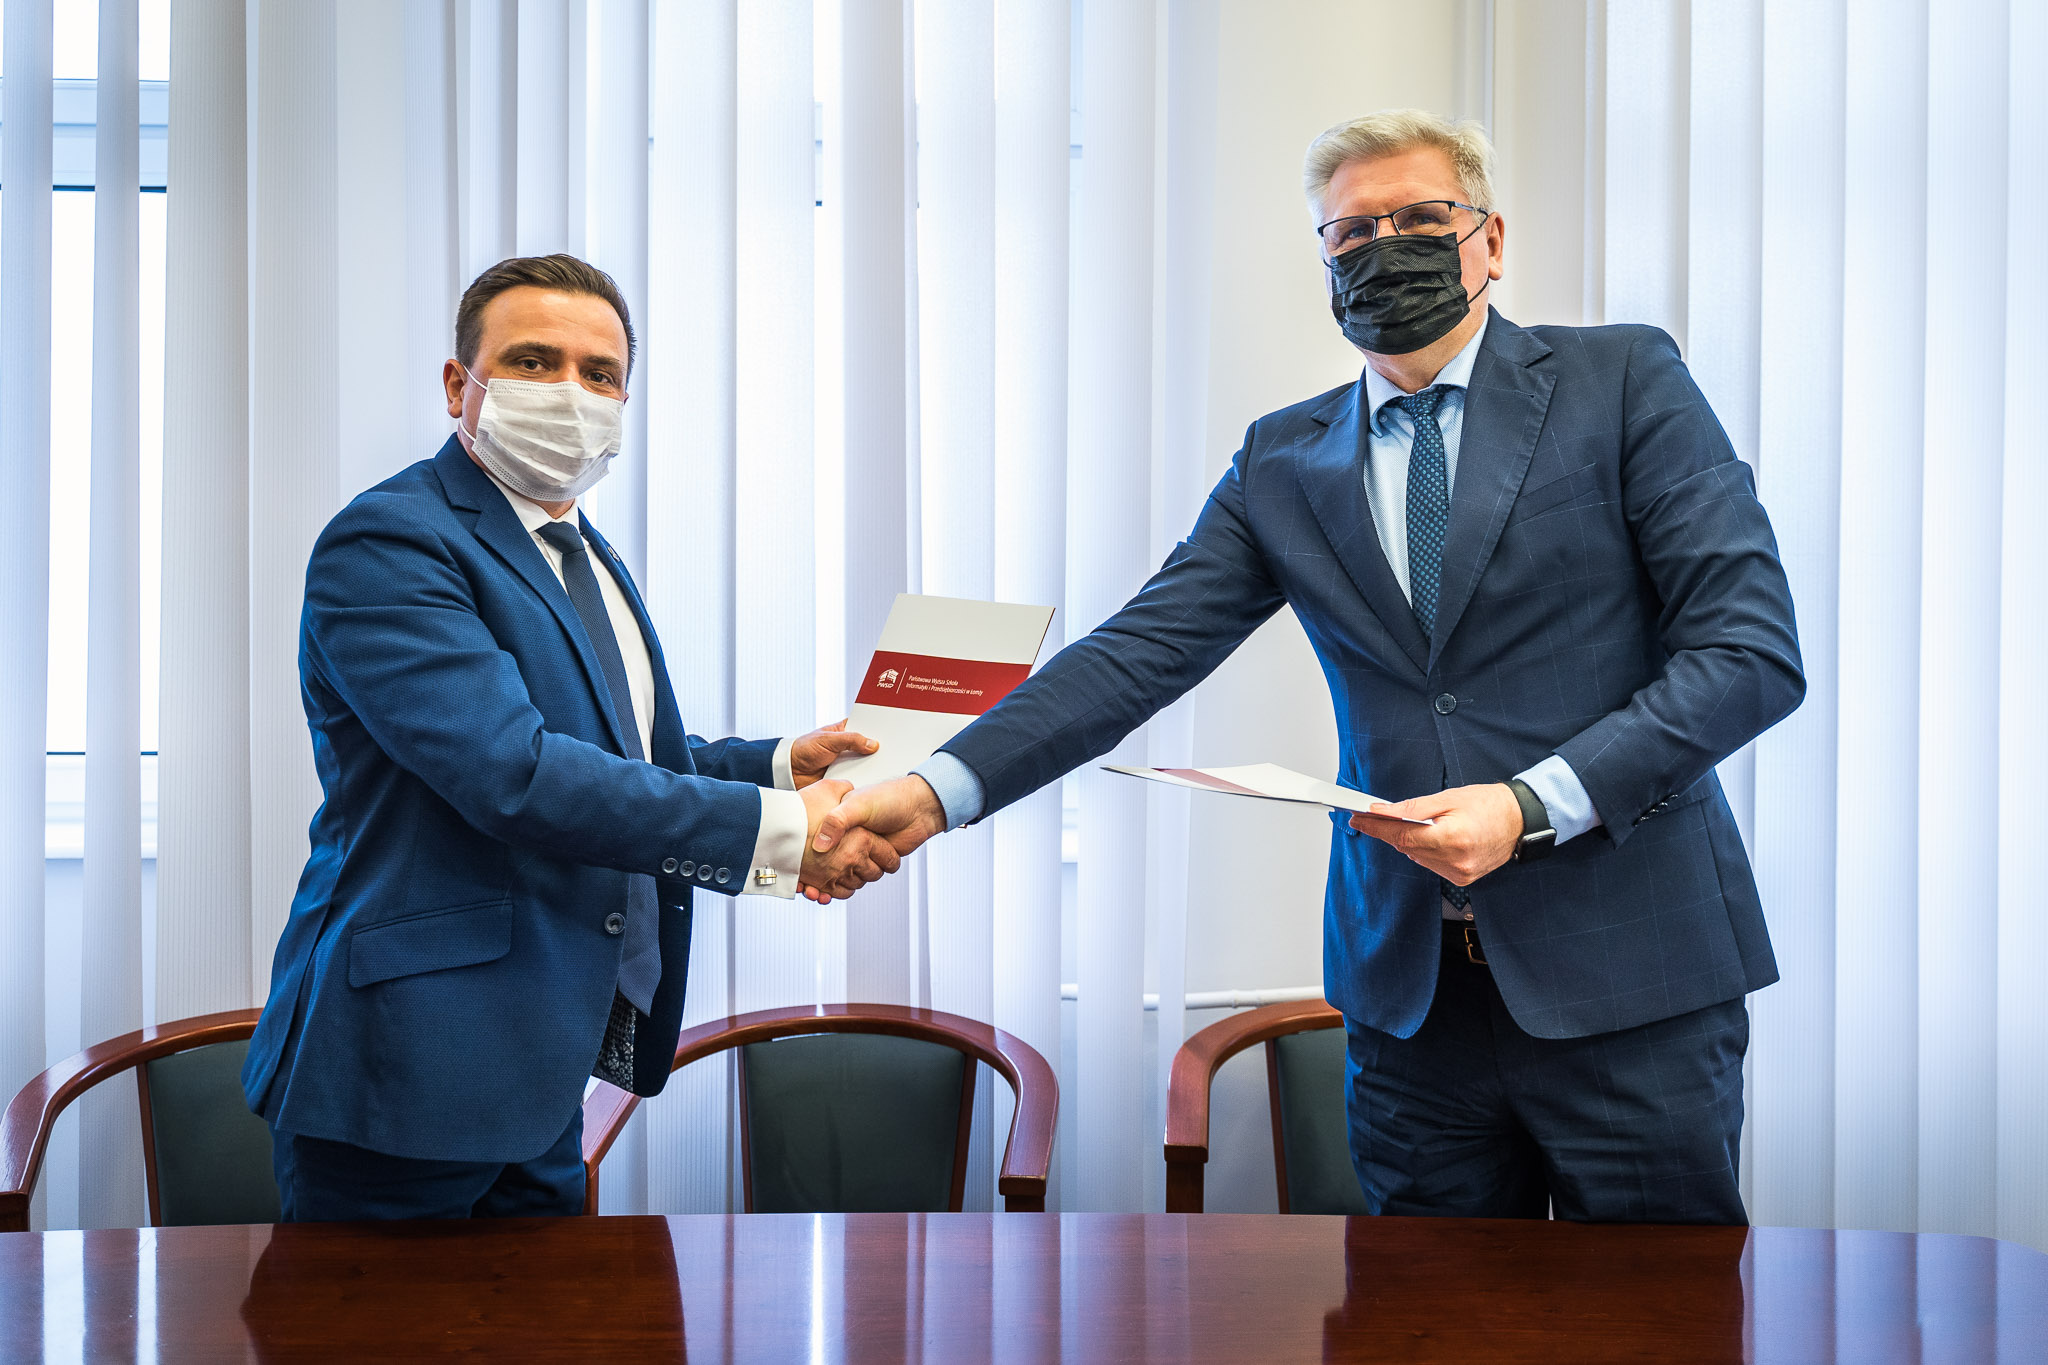 Zdjęcie przedstawia Dyrektora MOSiR i Rektora PWSIiP podających sobie dłonie.